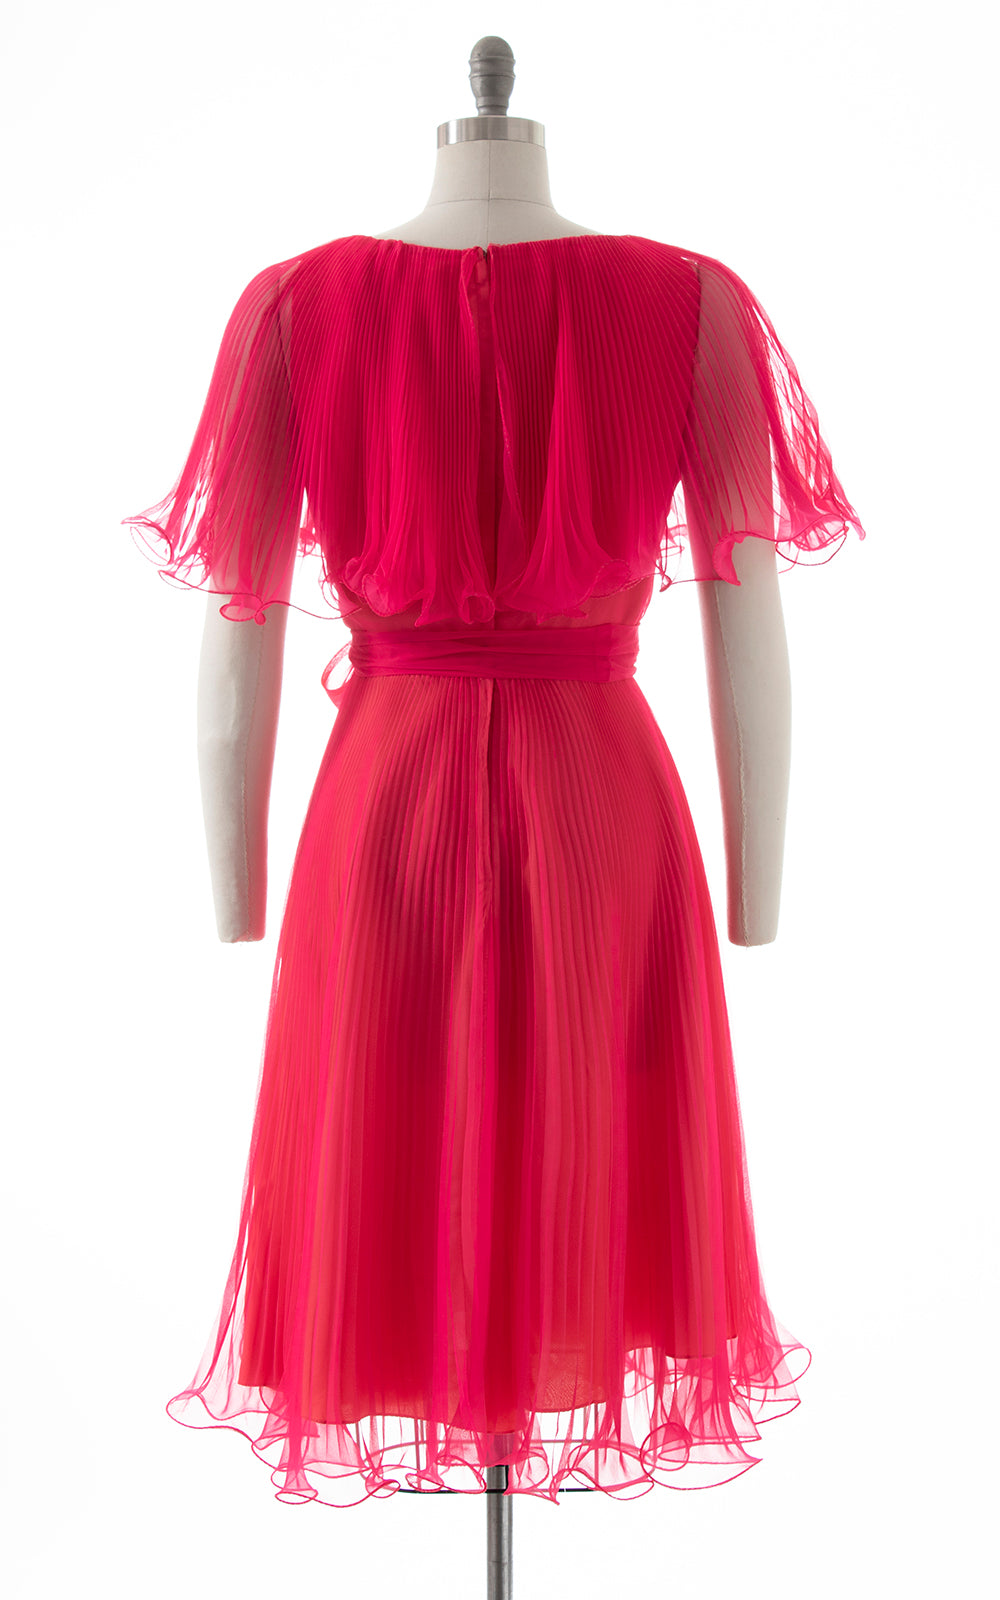 1970s MISS ELLIETTE Hot Pink Accordion Pleated Chiffon Dress | small/medium